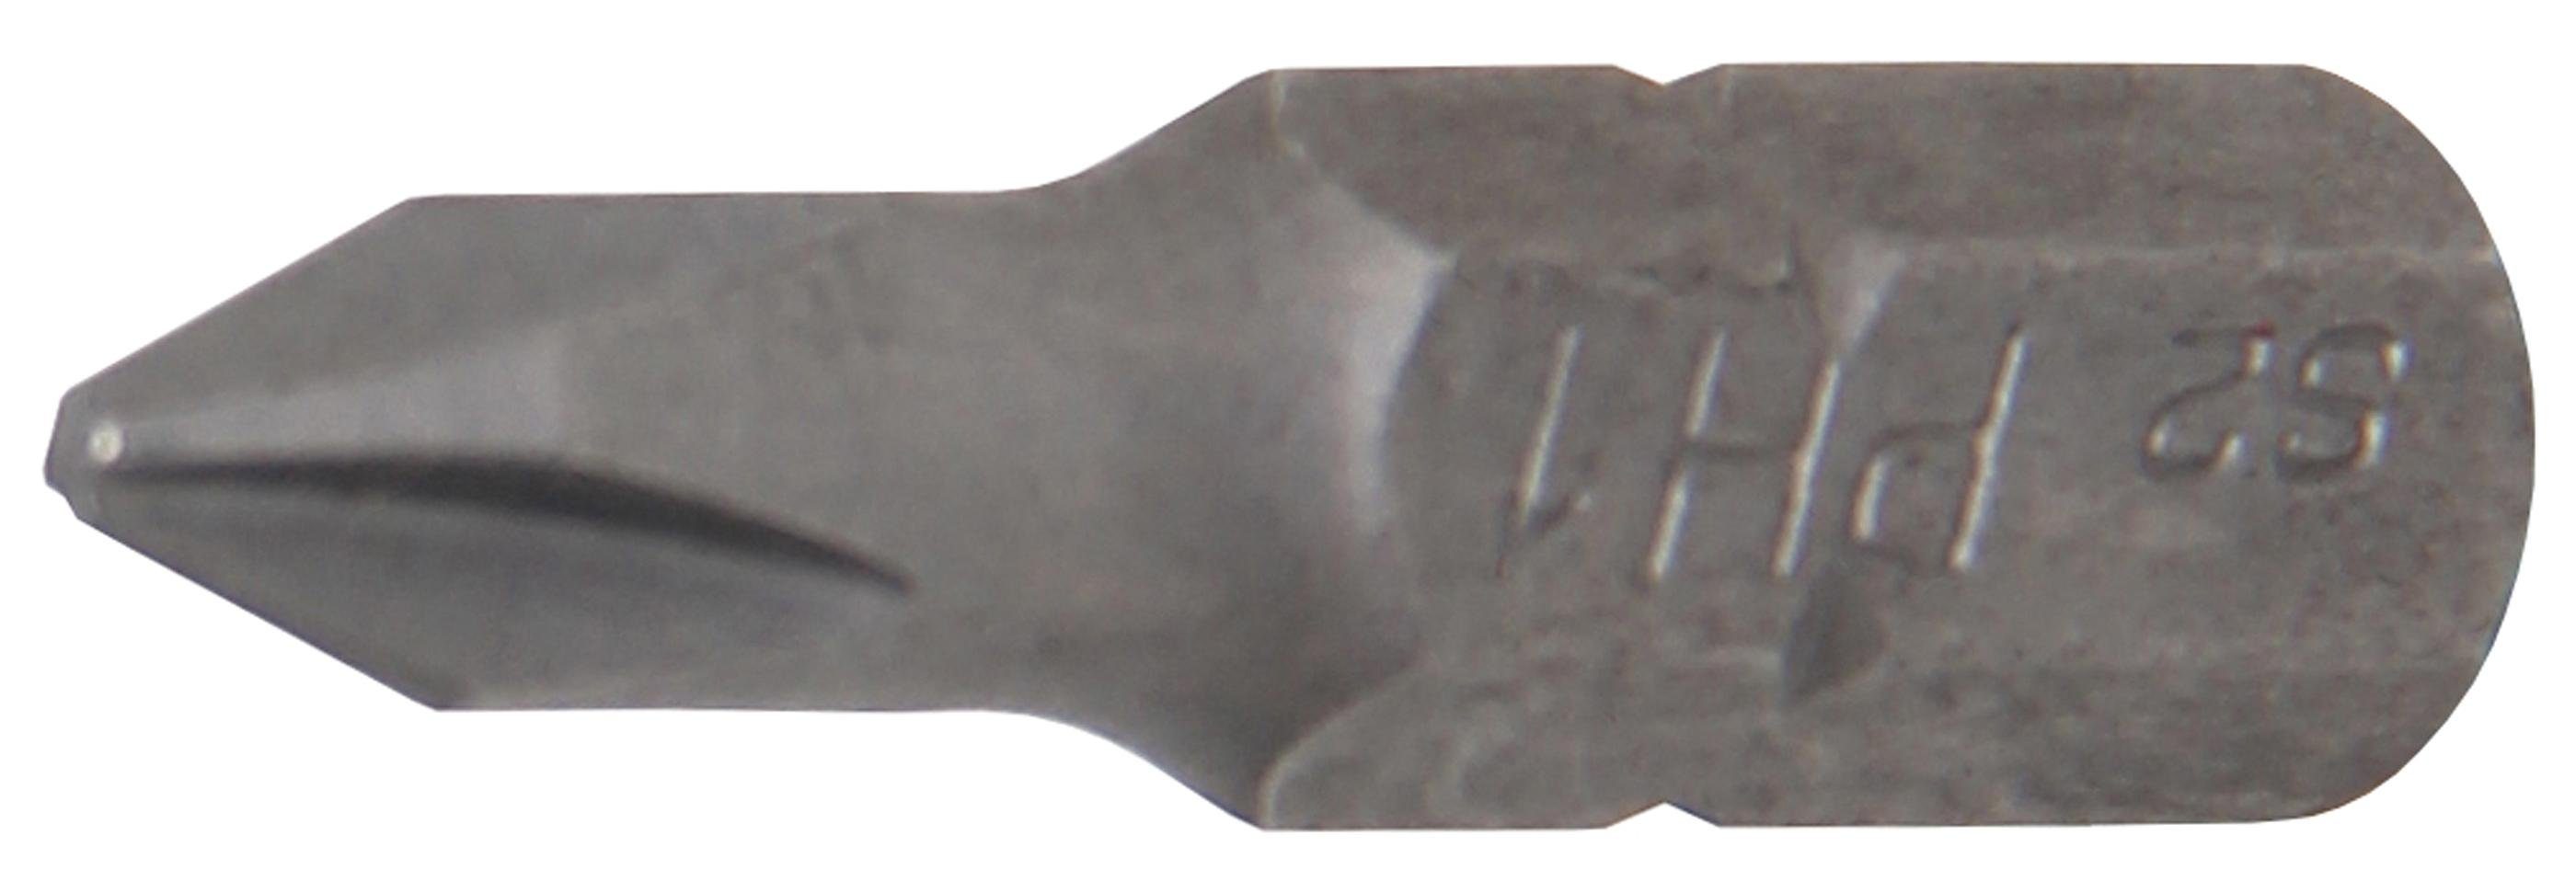 BGS technic Bit-Schraubendreher Bit, Antrieb Außensechskant 6,3 mm (1/4), Kreuzschlitz PH1